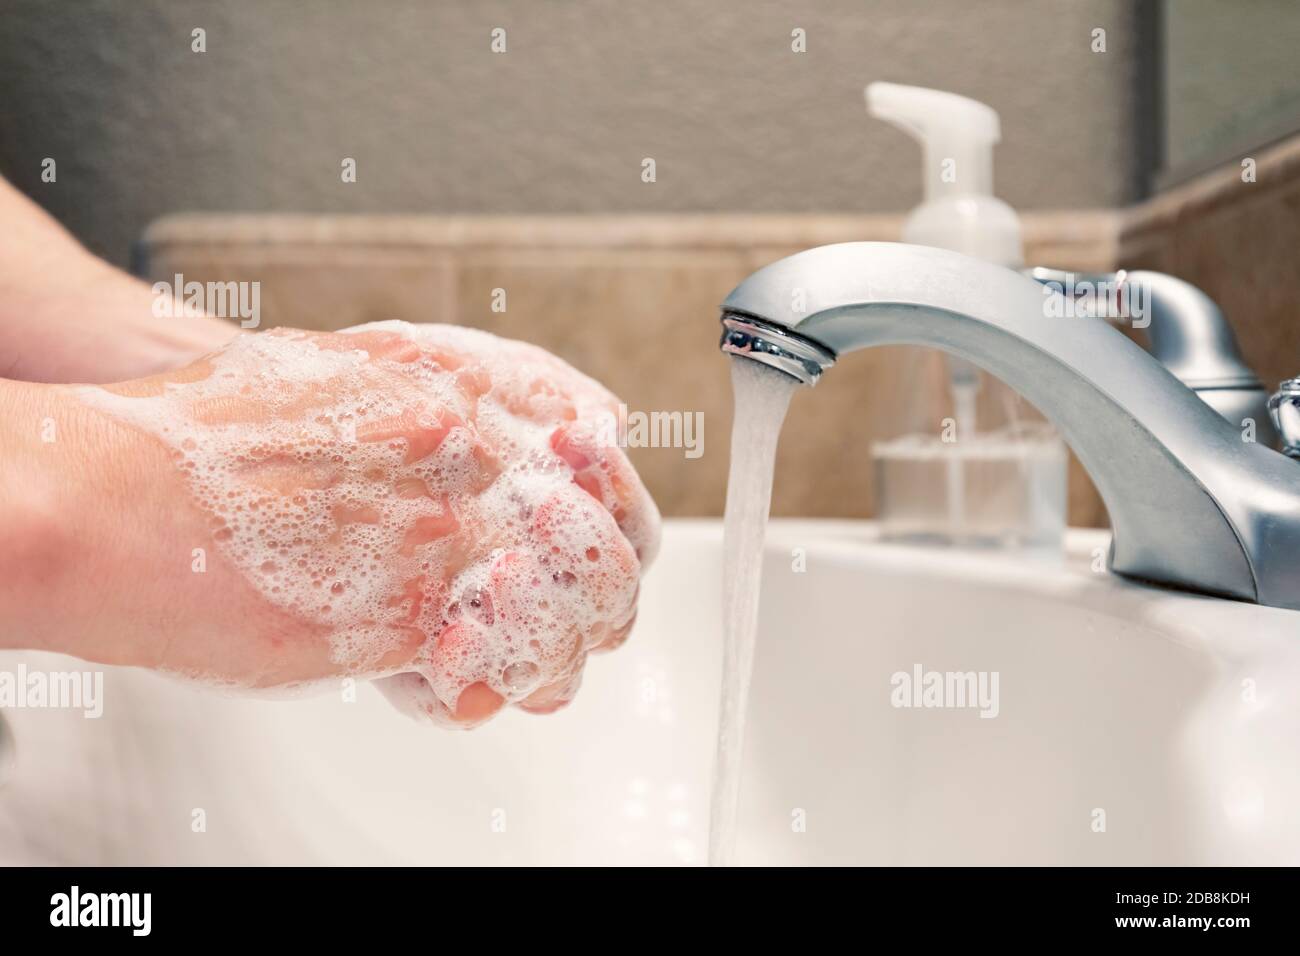 Lavando le mani con sapone e acqua nel lavello del bagno, protezione contro i virus influenzali del coronavirus covid-19, igiene per rimanere in buona salute Foto Stock